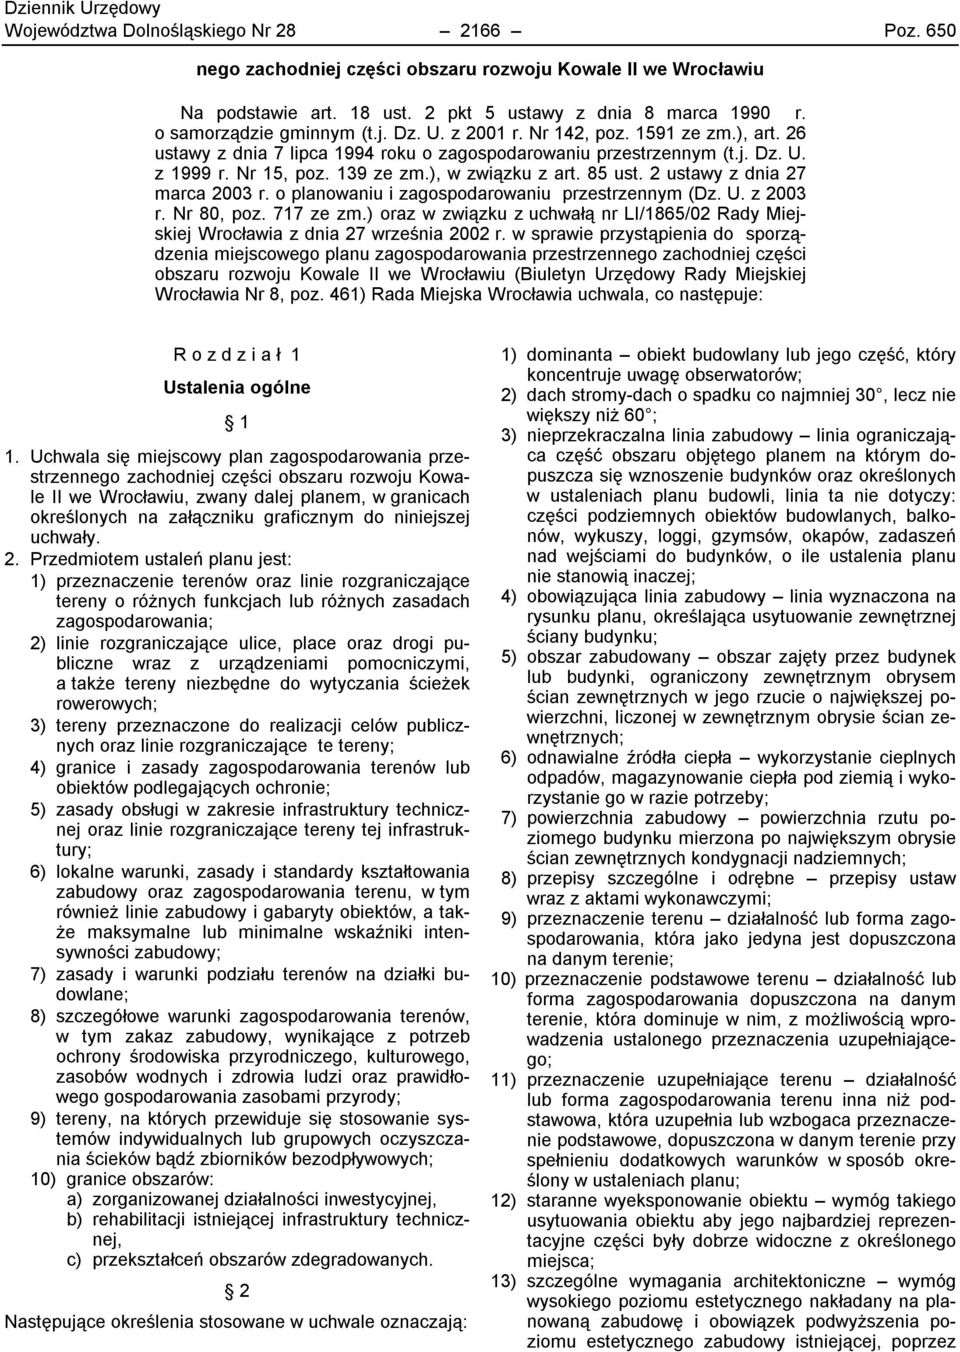 2 ustawy z dnia 27 marca 2003 r. o planowaniu i zagospodarowaniu przestrzennym (Dz. U. z 2003 r. Nr 80, poz. 717 ze zm.